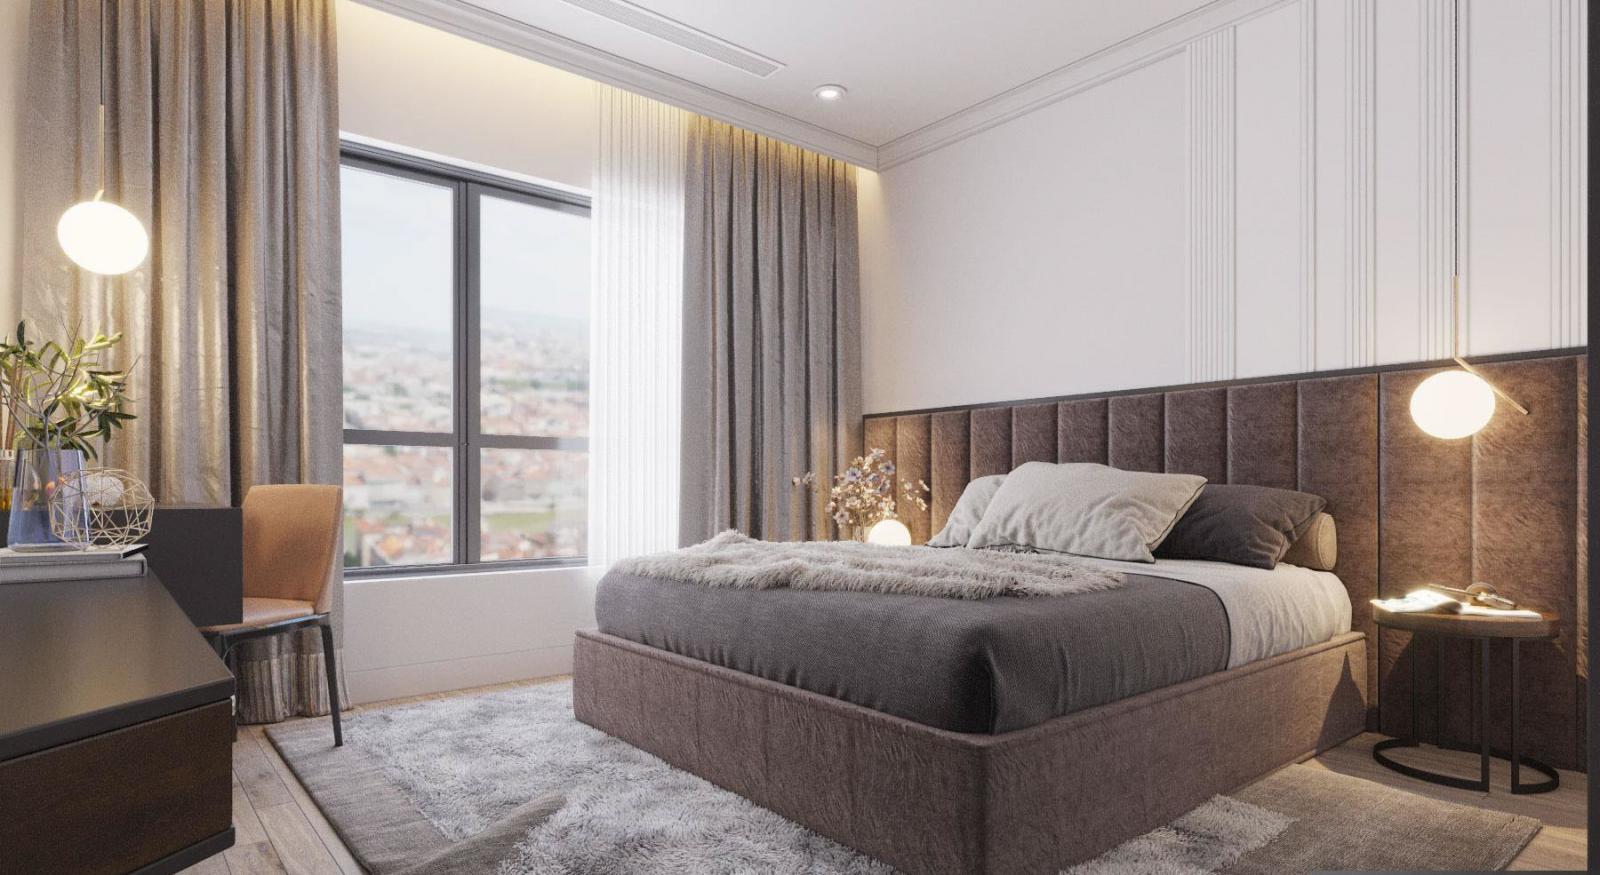 Đầu giường decor đơn giản mà sang trọng. Khung cửa kính trong suốt mang đến ánh sáng tự nhiên ngập tràn, giúp tôn lên vẻ đẹp của đường nét nội thất hiện đại.